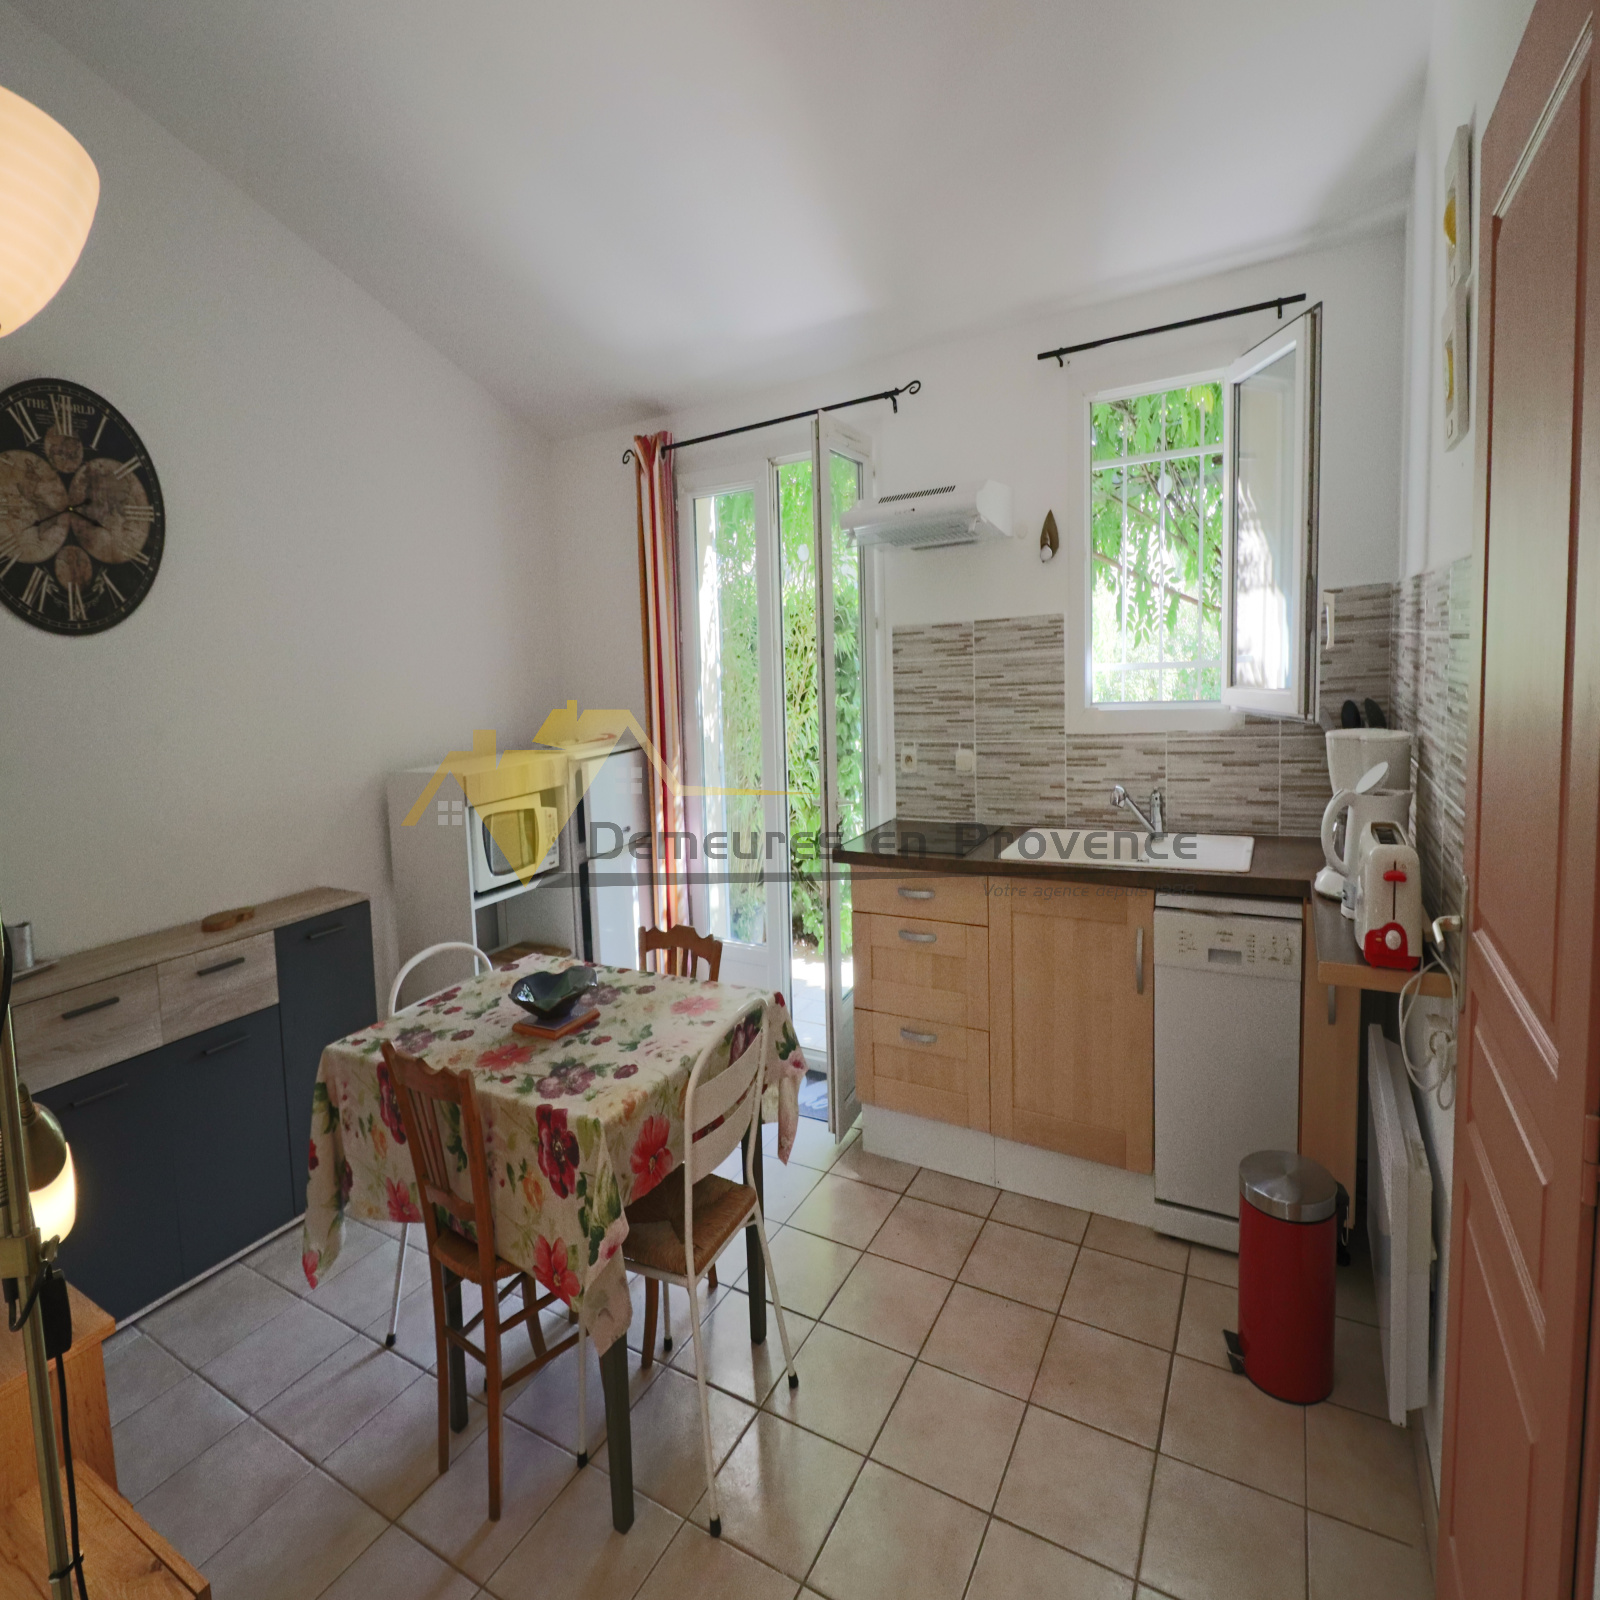 Image_7, Appartement, Vaison-la-Romaine, ref :546